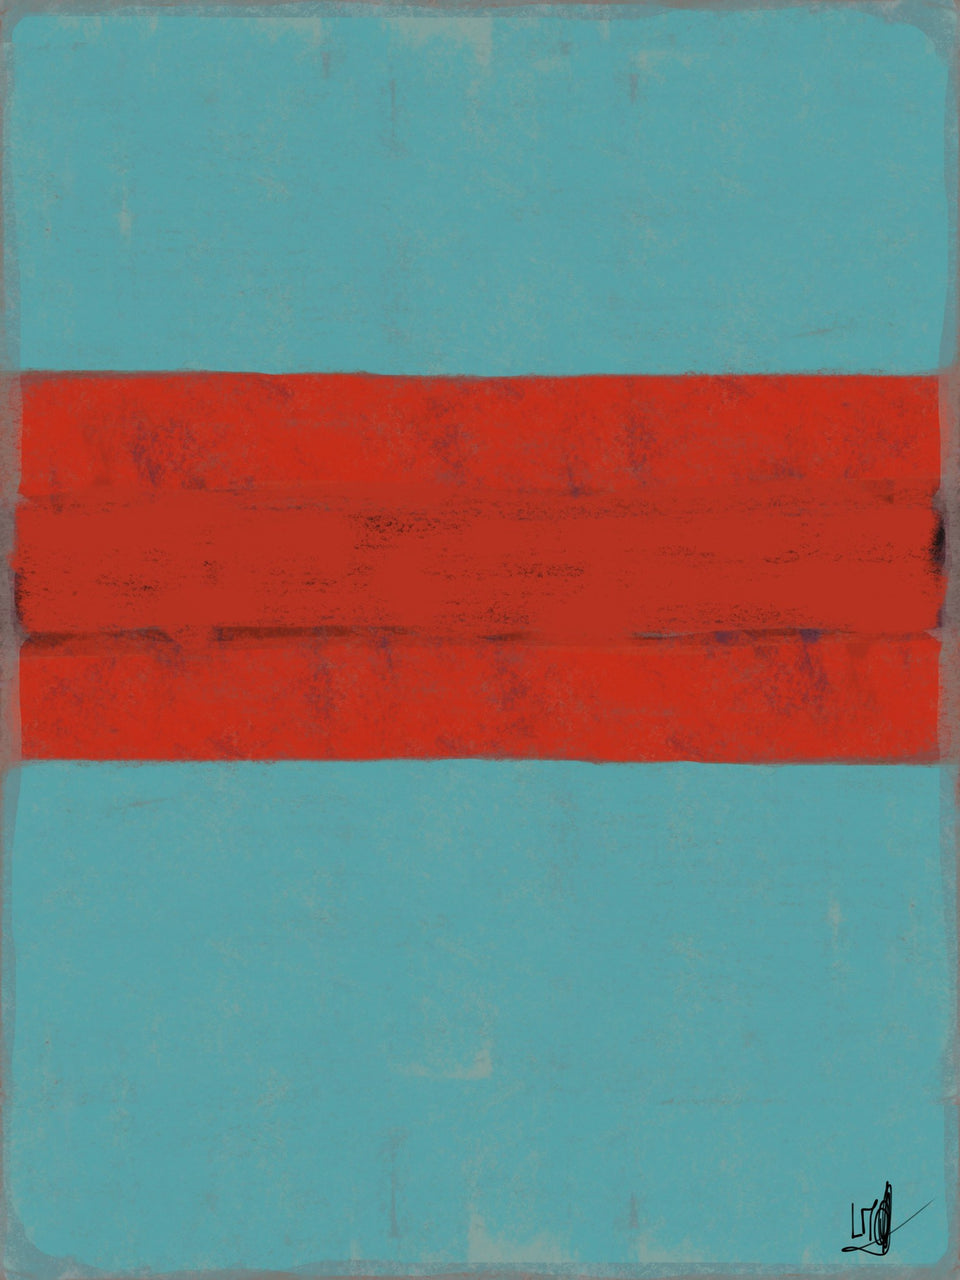  Rouge sur bleu de bleu, style Rothko - Œuvres d'art  artiste peintre Ludwig Mario  galerie TACT Art abstrait & contemporain